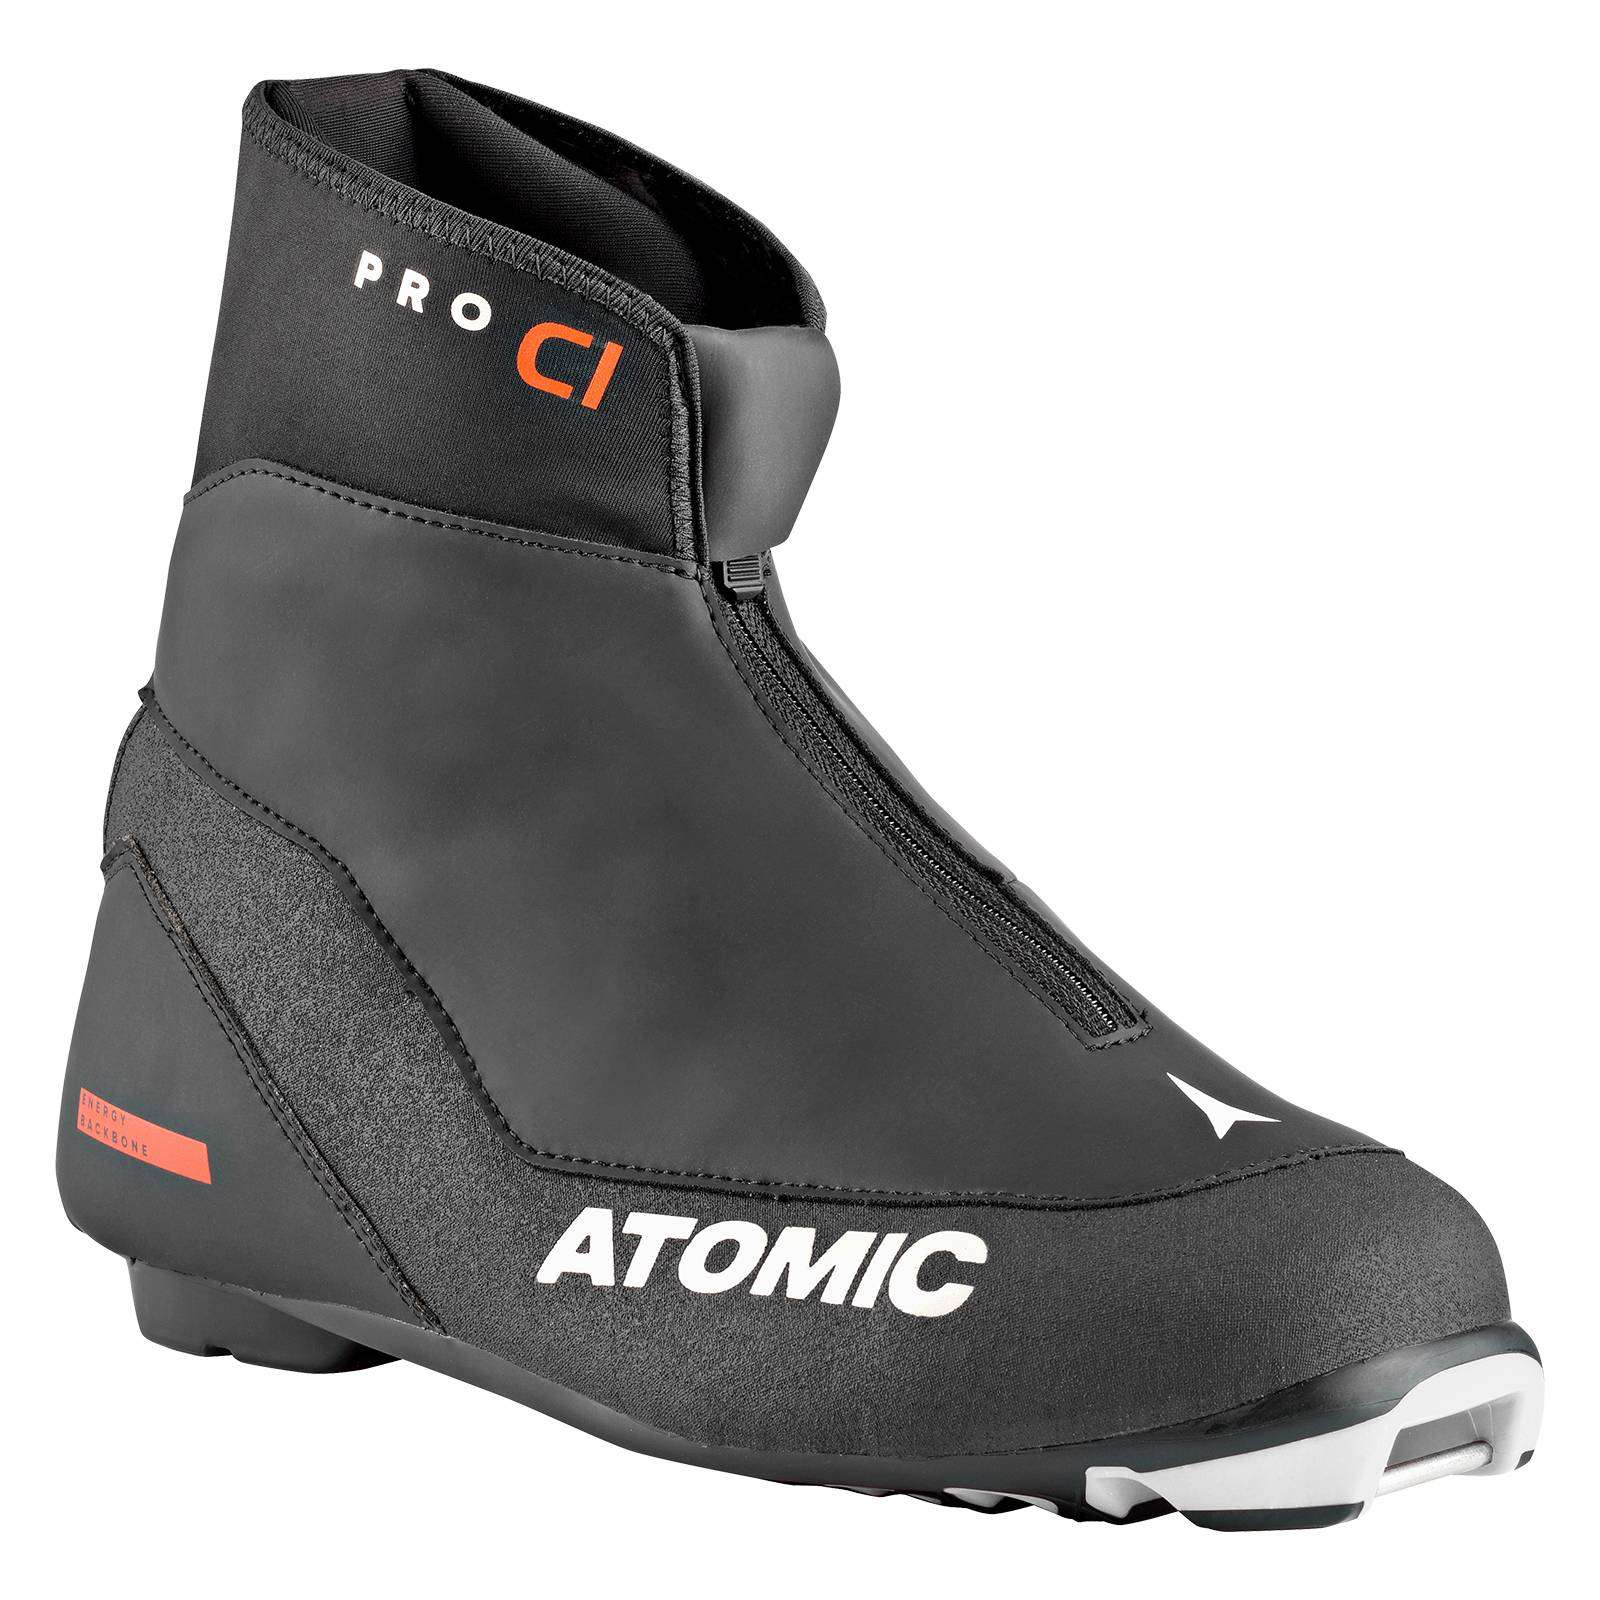 ATOMIC Pro C1 Langlaufschuhe